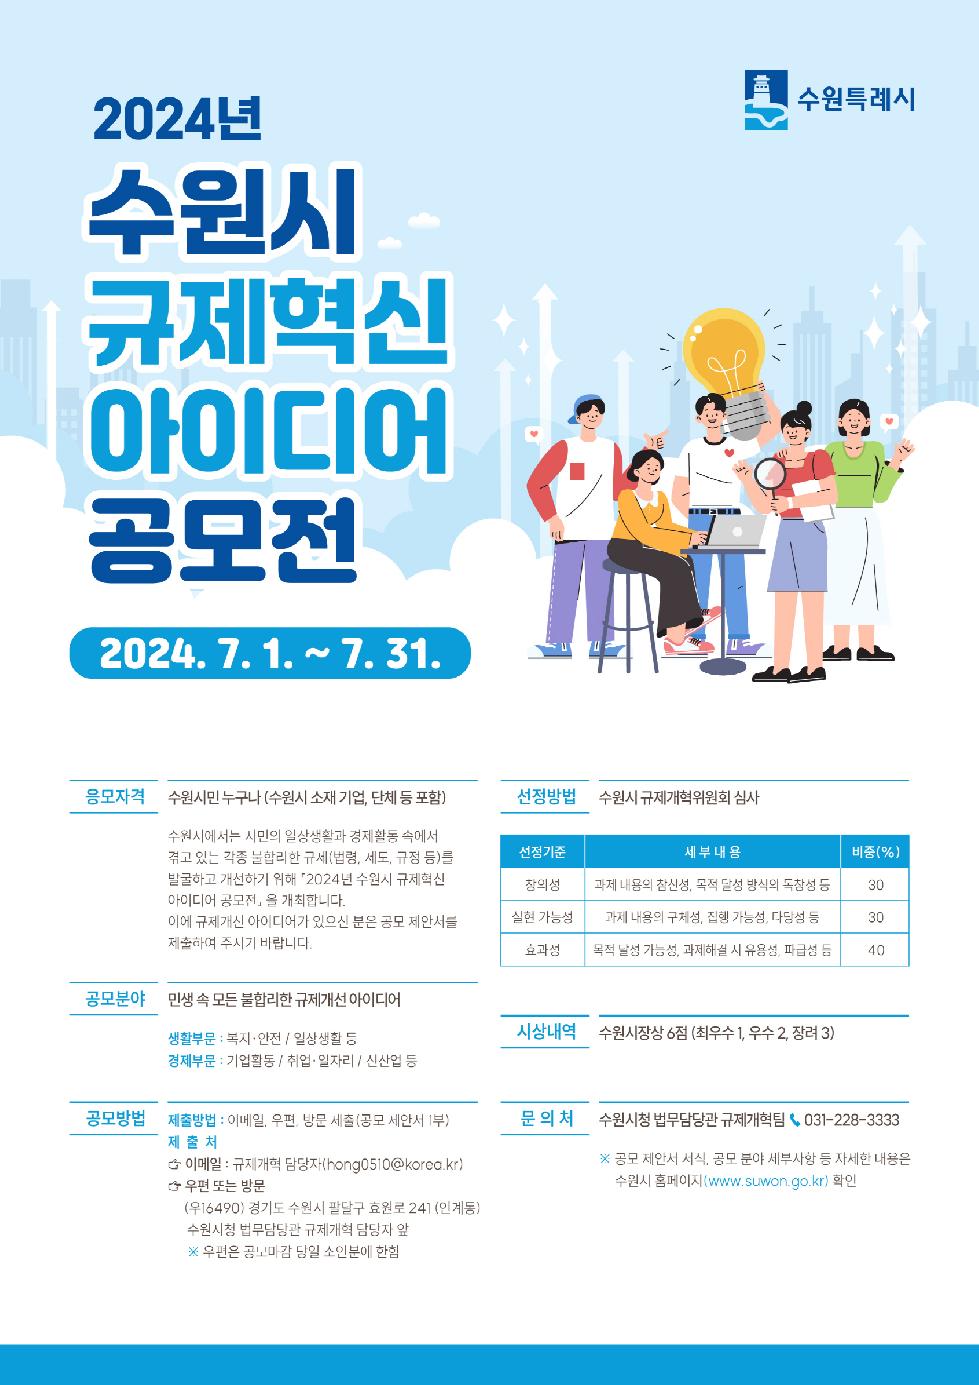 수원시 2024년 규제혁신 아이디어 공모전 개최